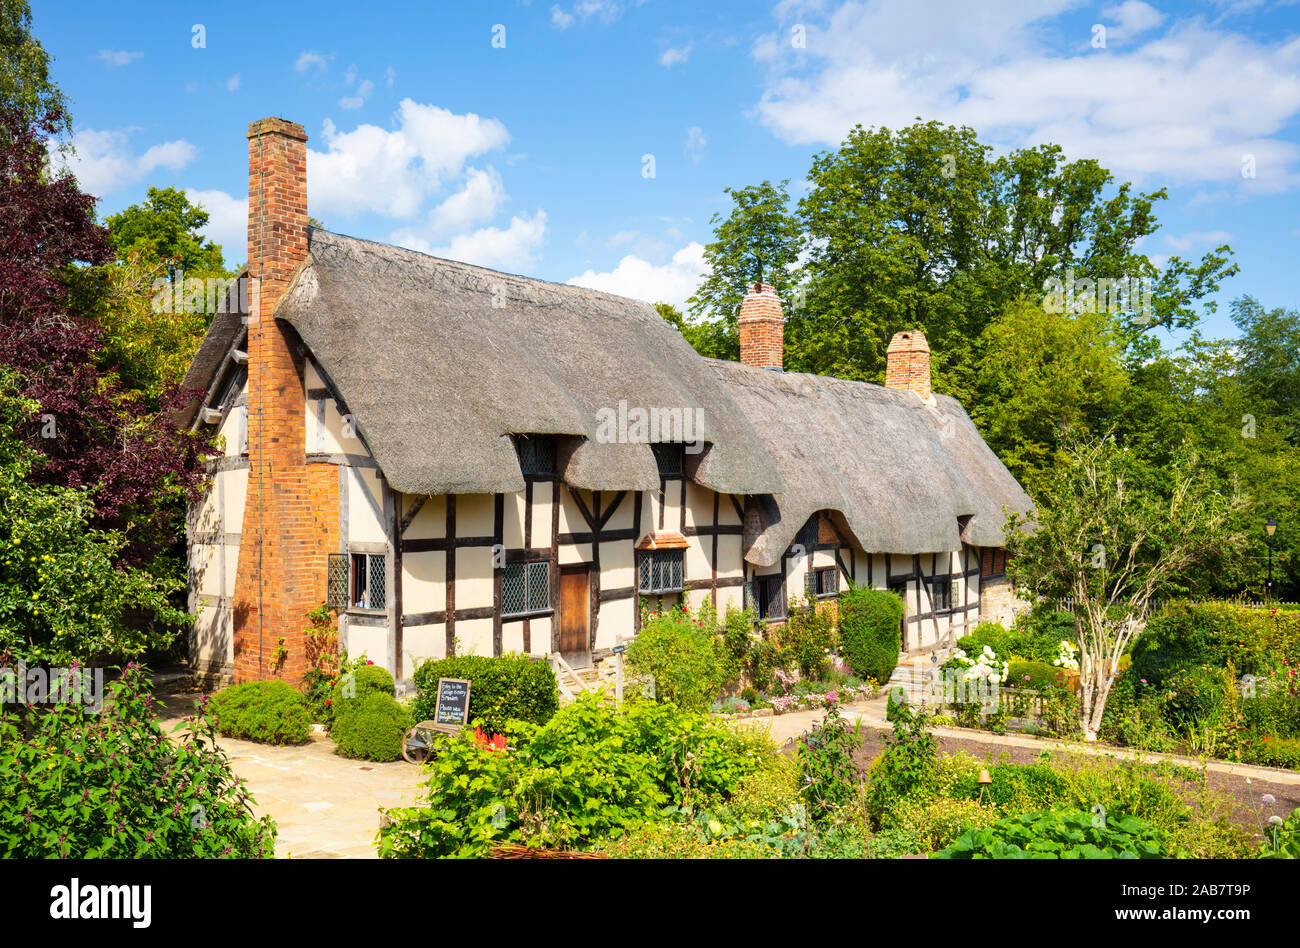 La cabaña de Anne Hathaway, una casita con techo de paja en un jardín, Shottery, cerca de Stratford upon Avon, Warwickshire, Inglaterra, Reino Unido, Europa Foto de stock